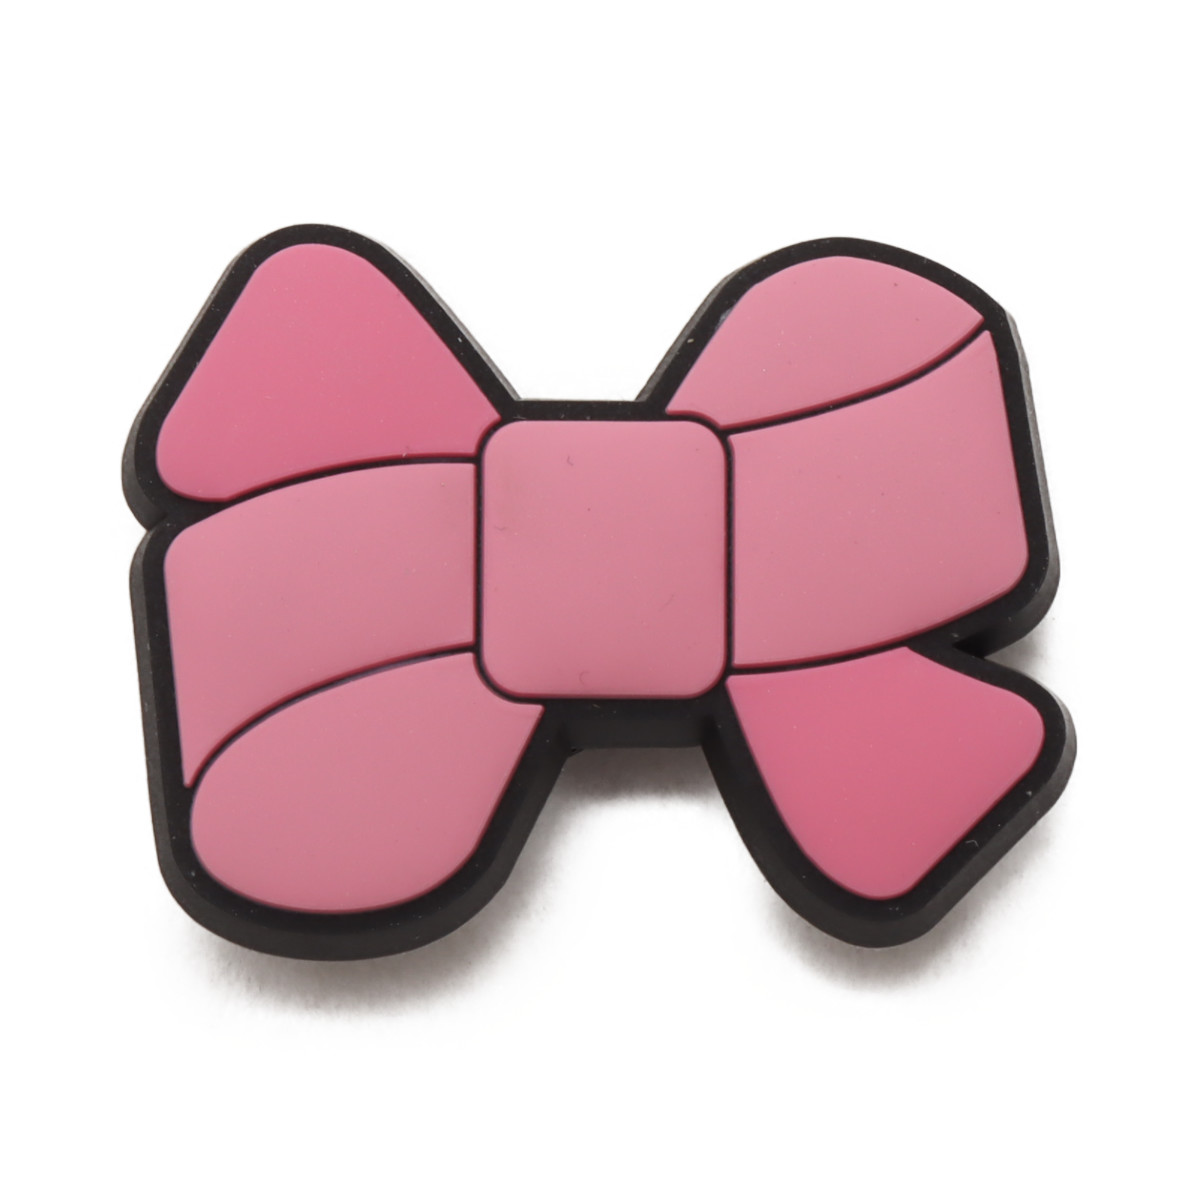 大決算セール 即納&大特価 crocs Pink Bow クロックス ピンク ボウ MULTI20FA-I blancoweb.sakura.ne.jp blancoweb.sakura.ne.jp